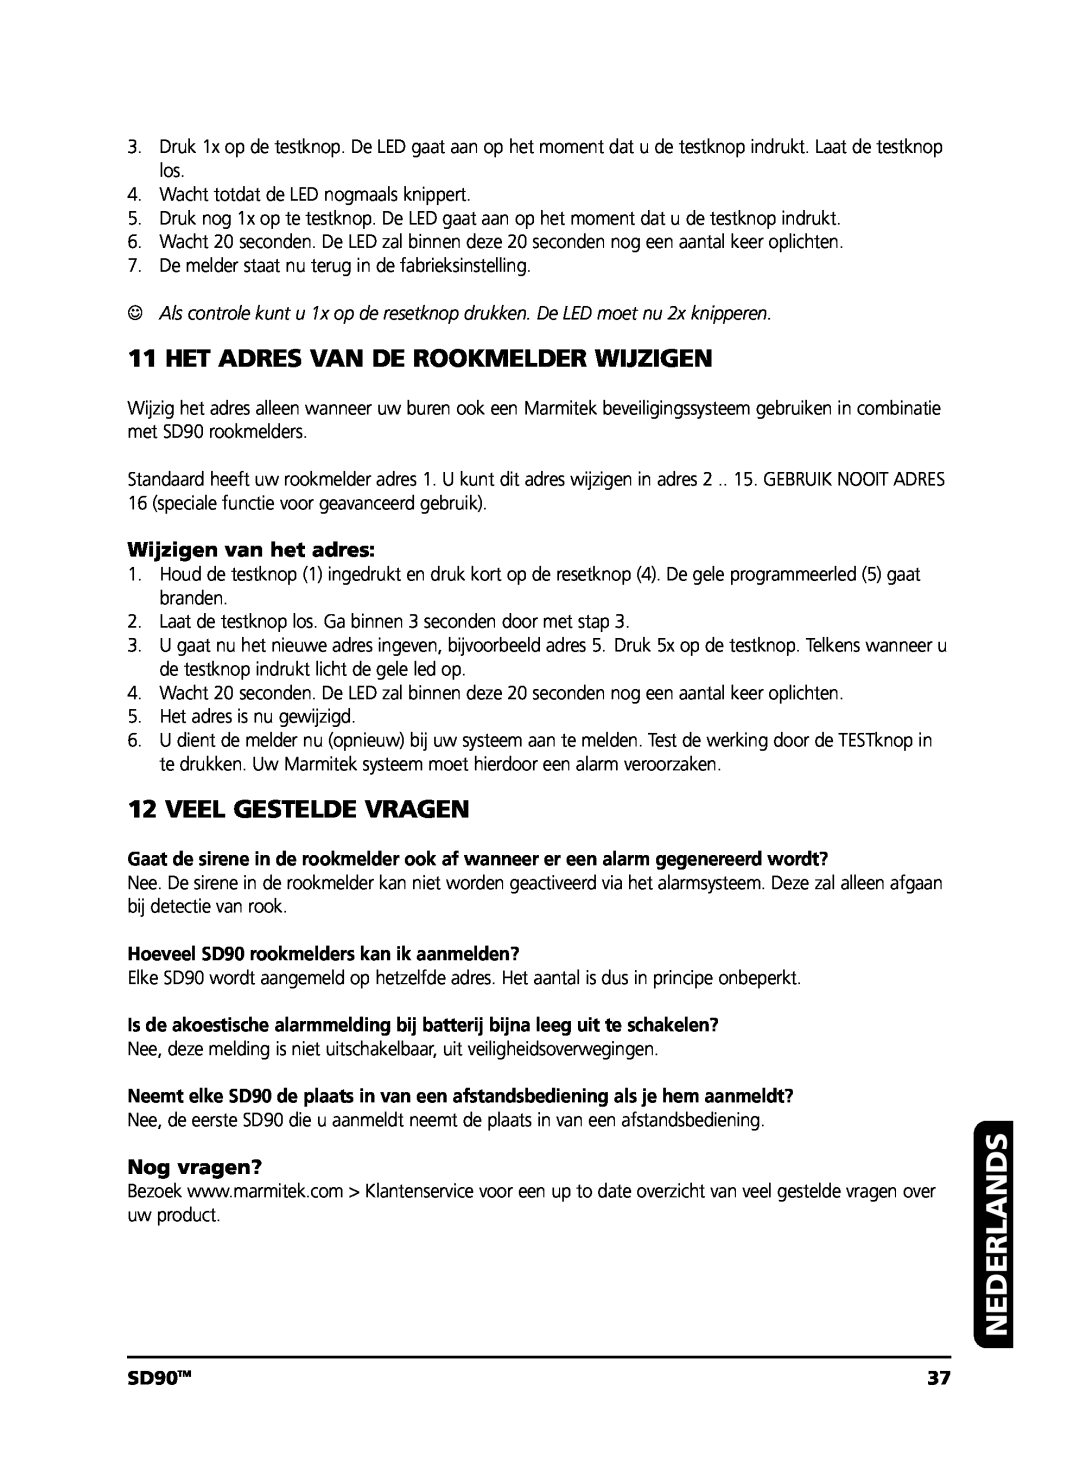 Marmitek user manual Het Adres Van De Rookmelder Wijzigen, Veel Gestelde Vragen, Nederlands, SD90TM 